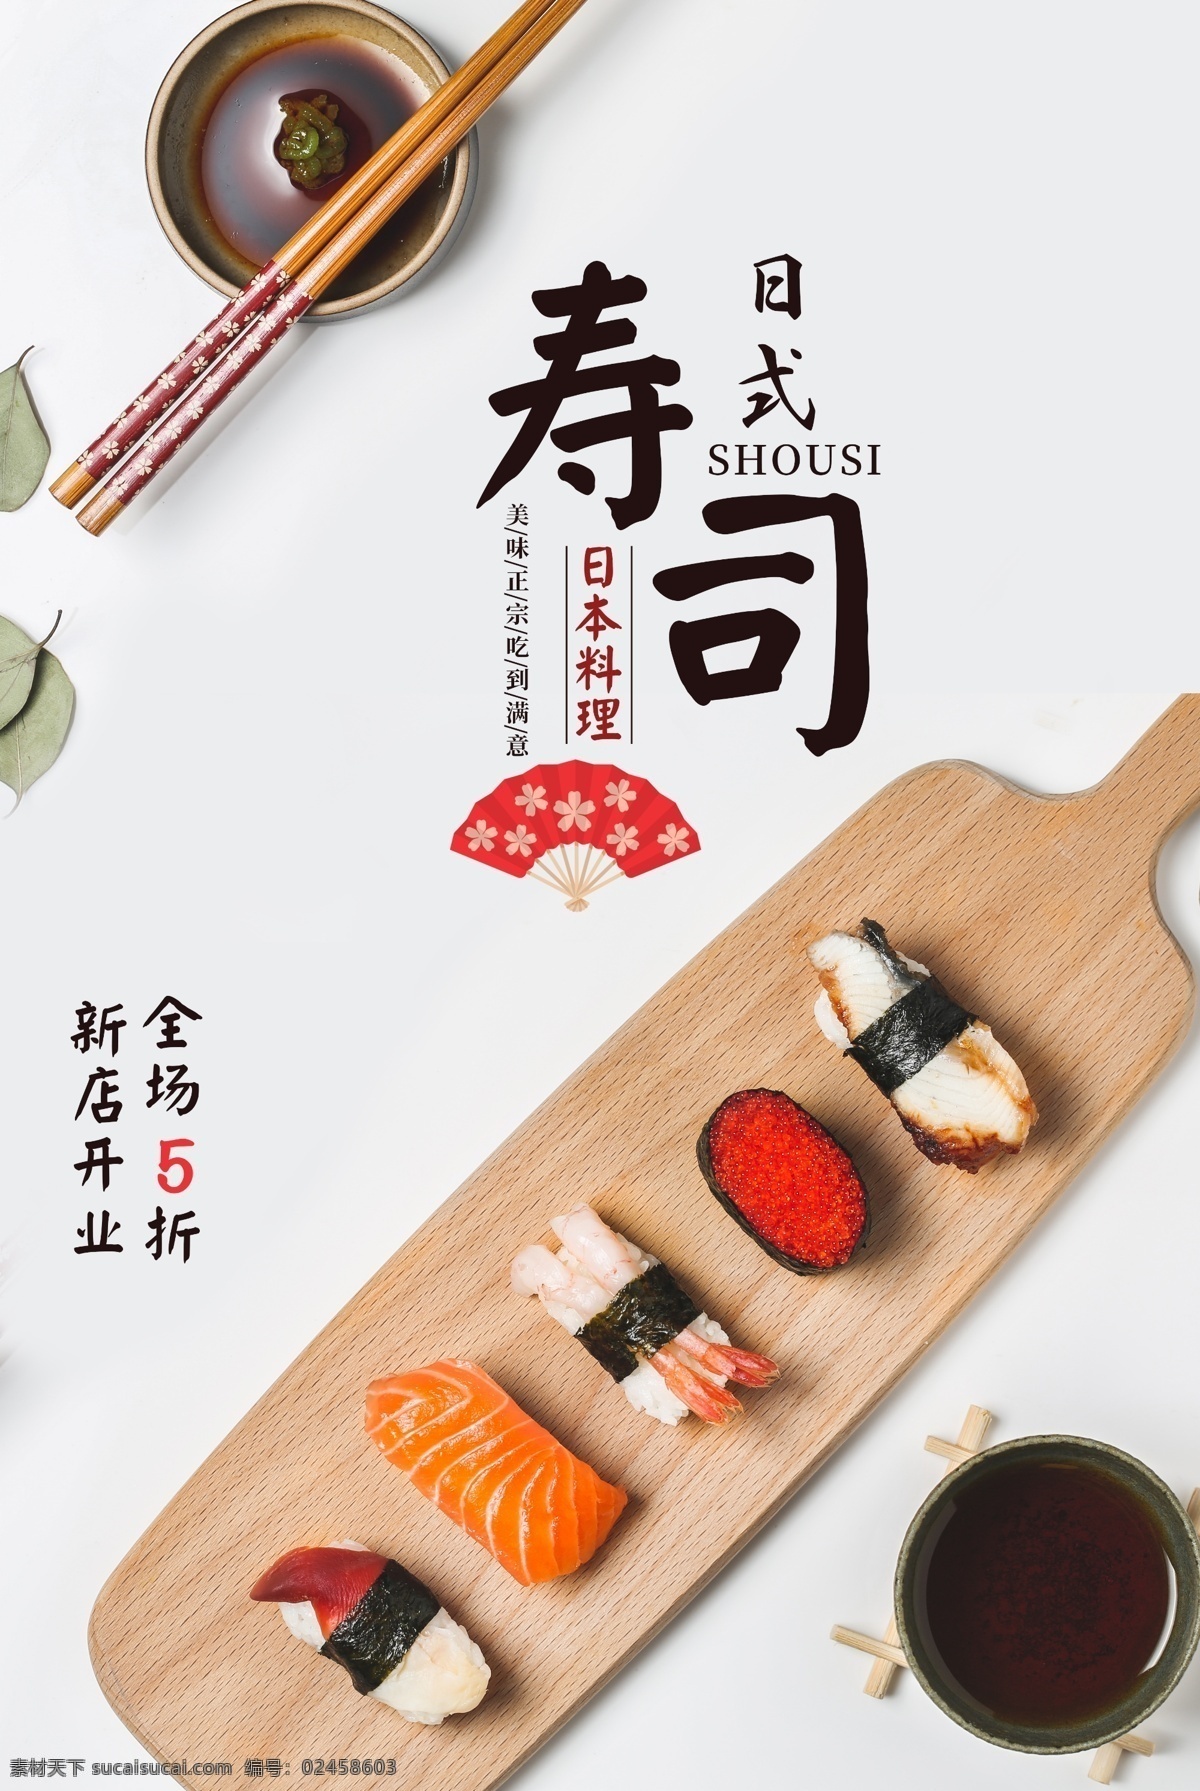 日式 寿司 美食 活动 宣传海报 日式寿司 宣传 海报 餐饮美食 类